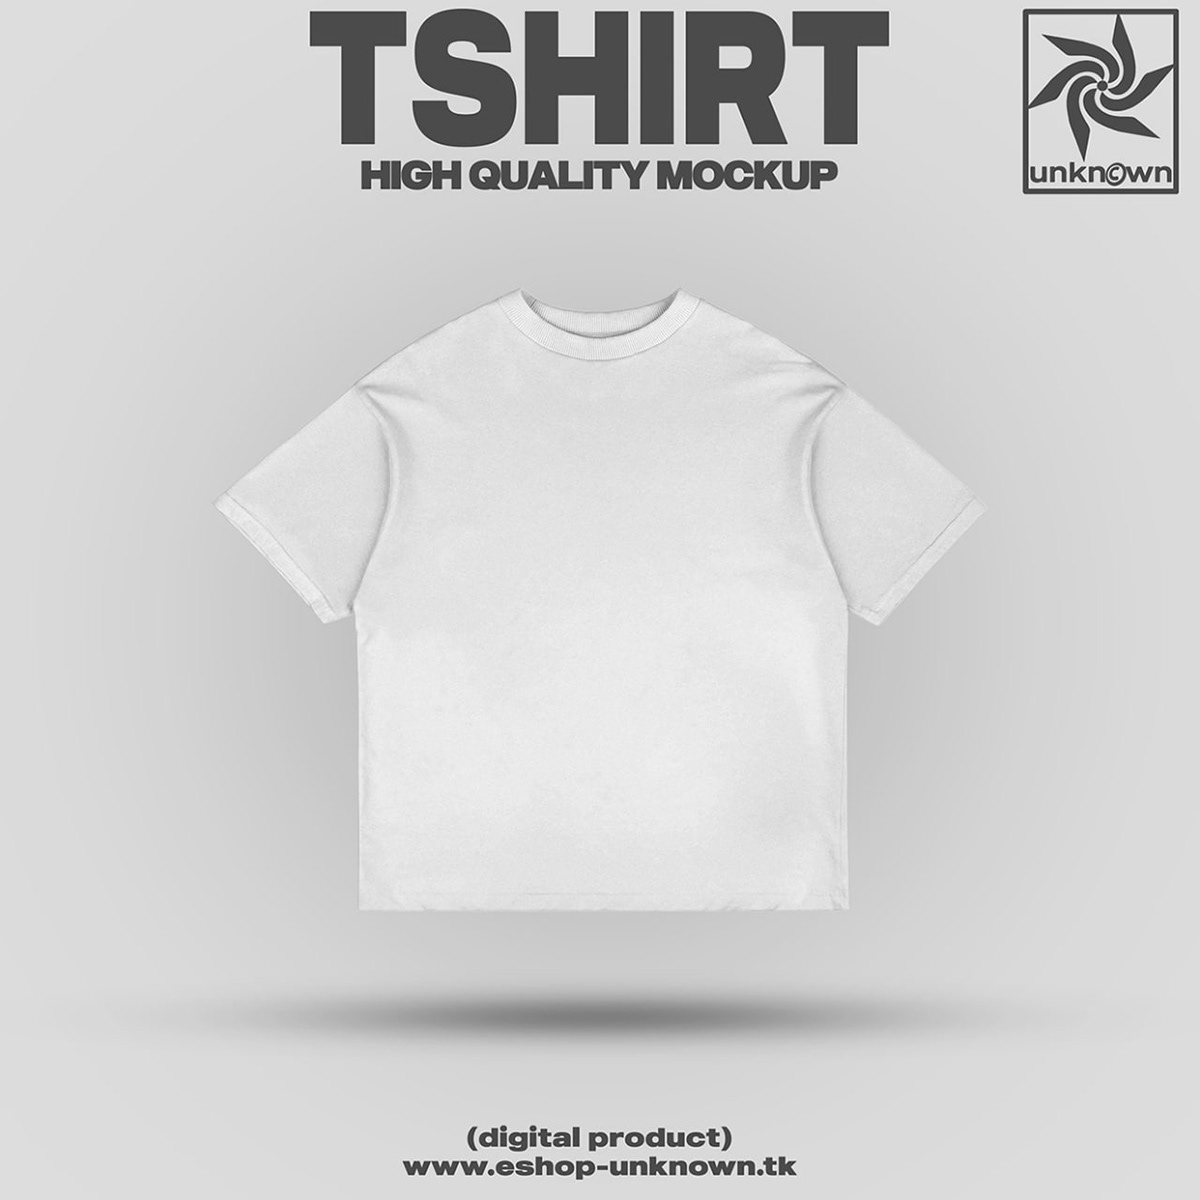 tshirt mockup free download Free Mockups free psd tshirt t-shirt Tshirt Design psd